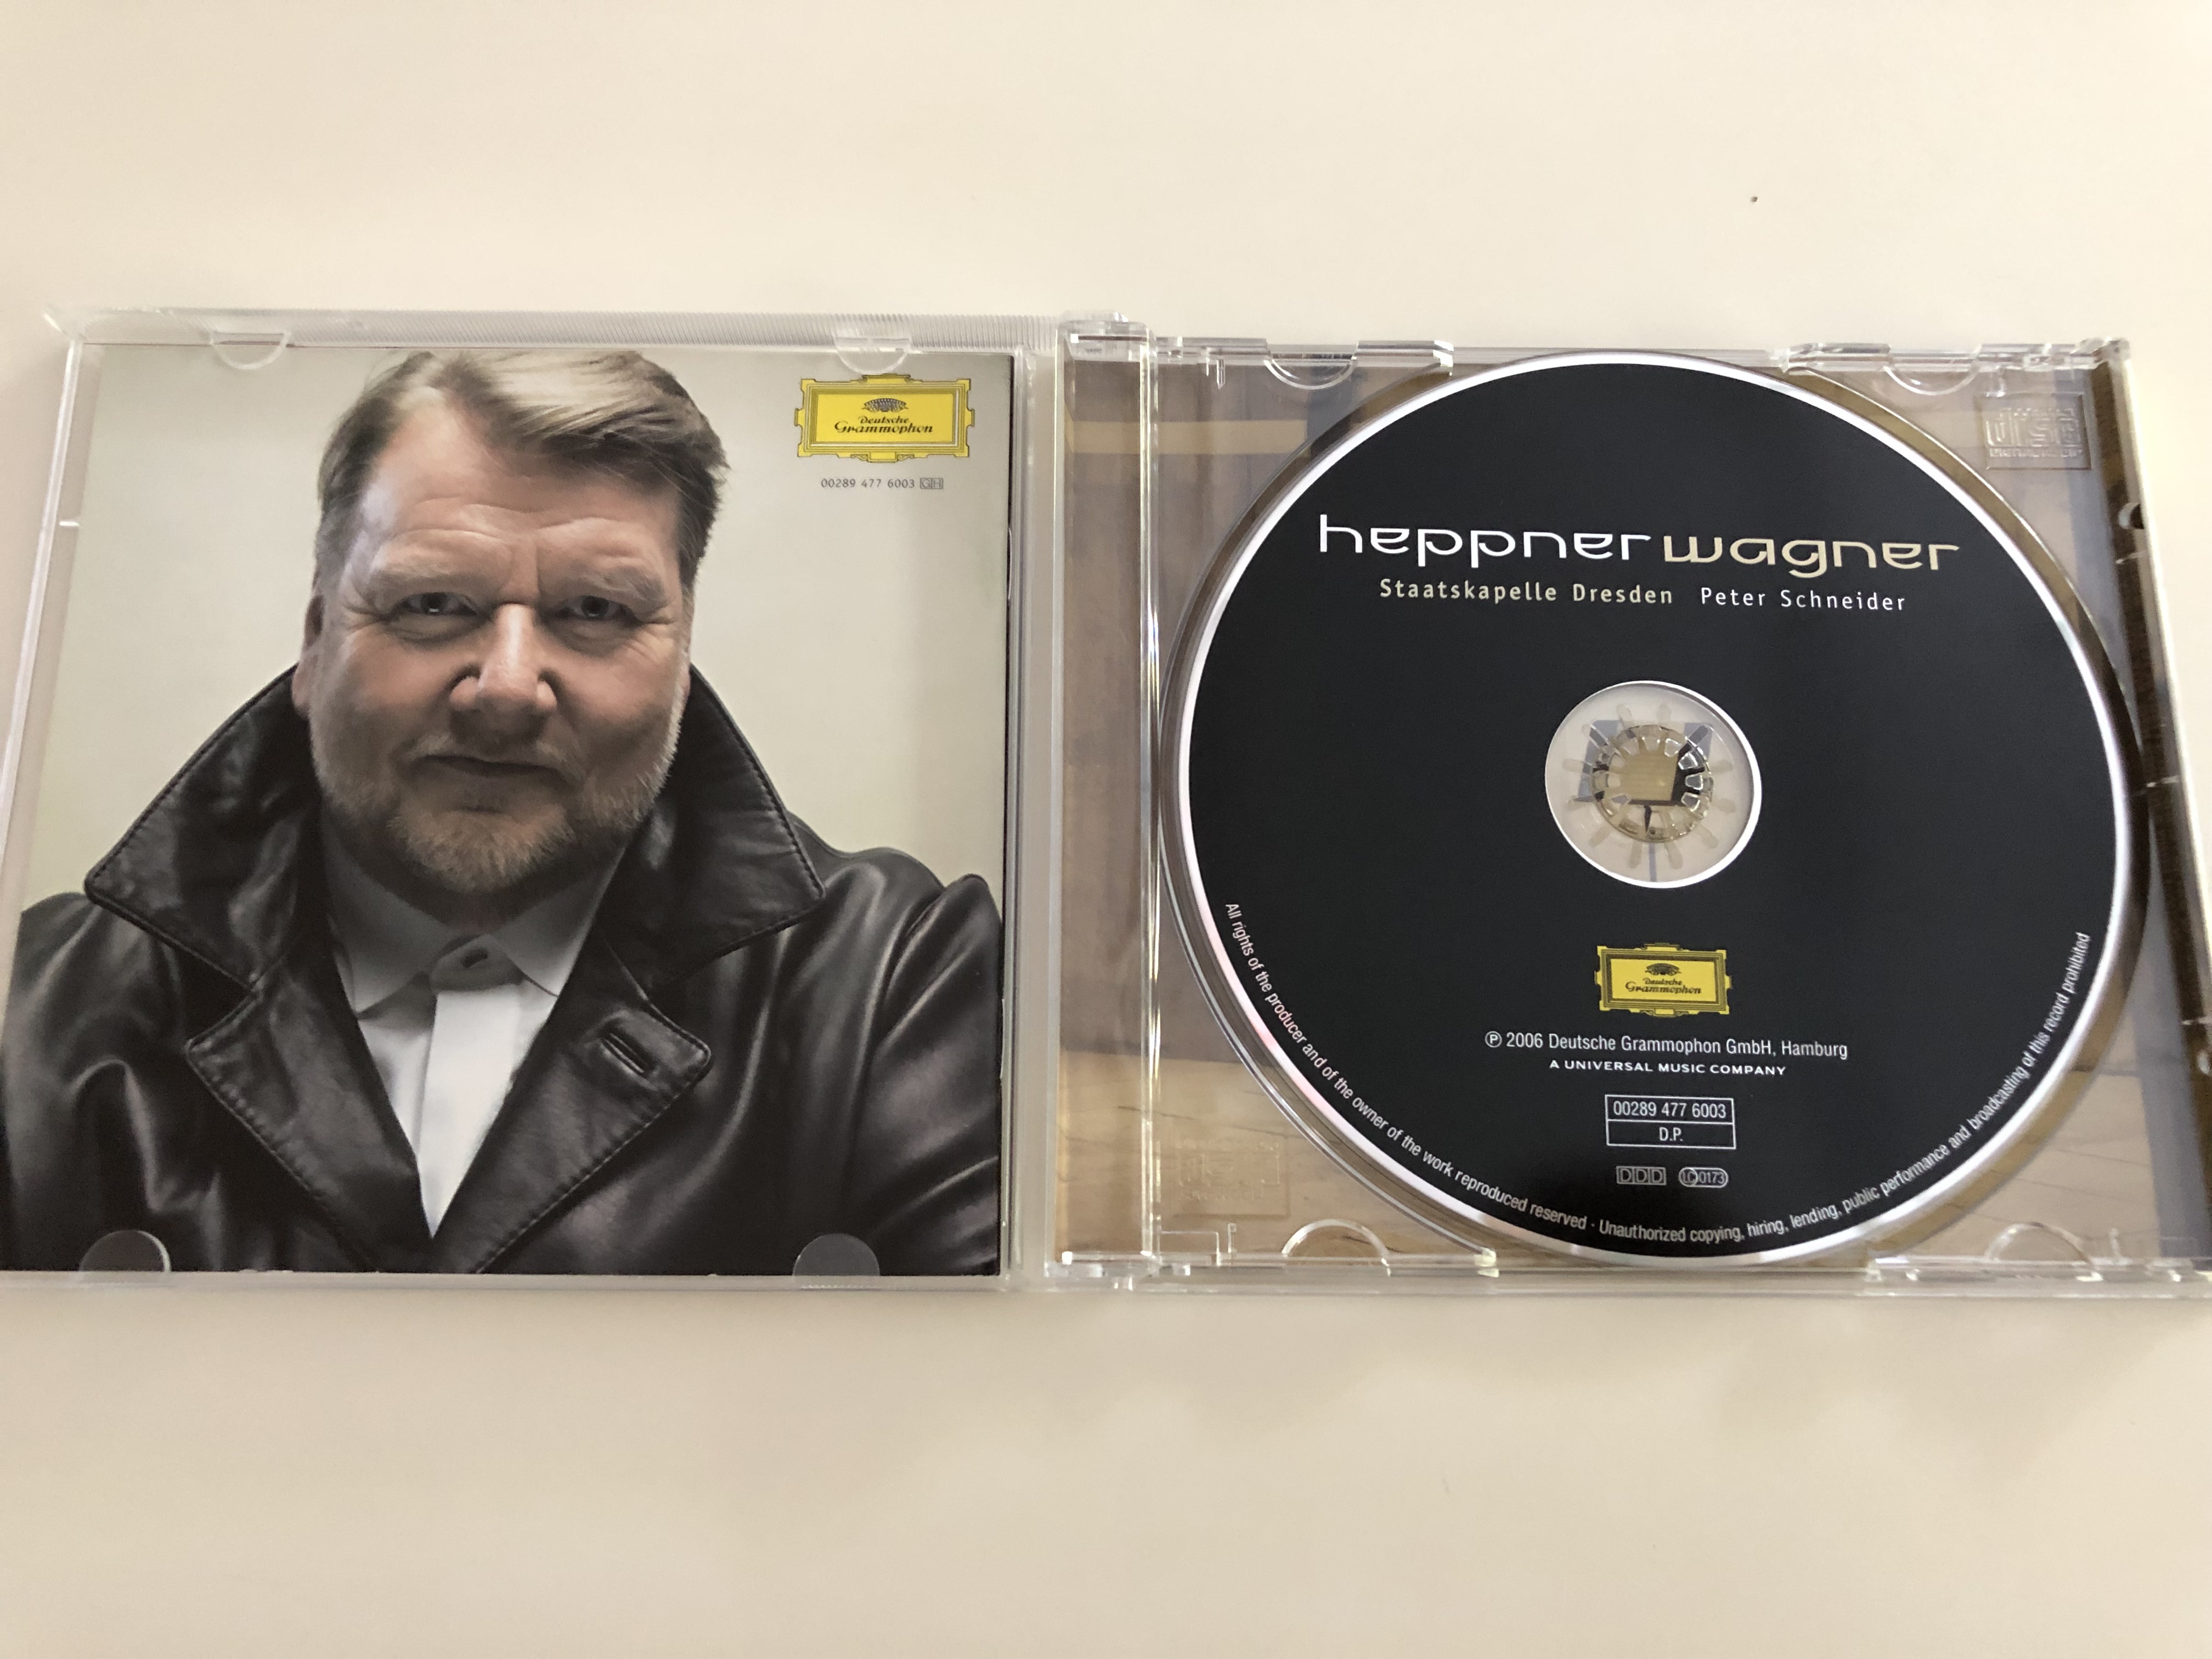 ben-heppner-wagner-staatskapelle-dresden-conducted-by-peter-schneider-audio-cd-2006-1117011040-.jpg